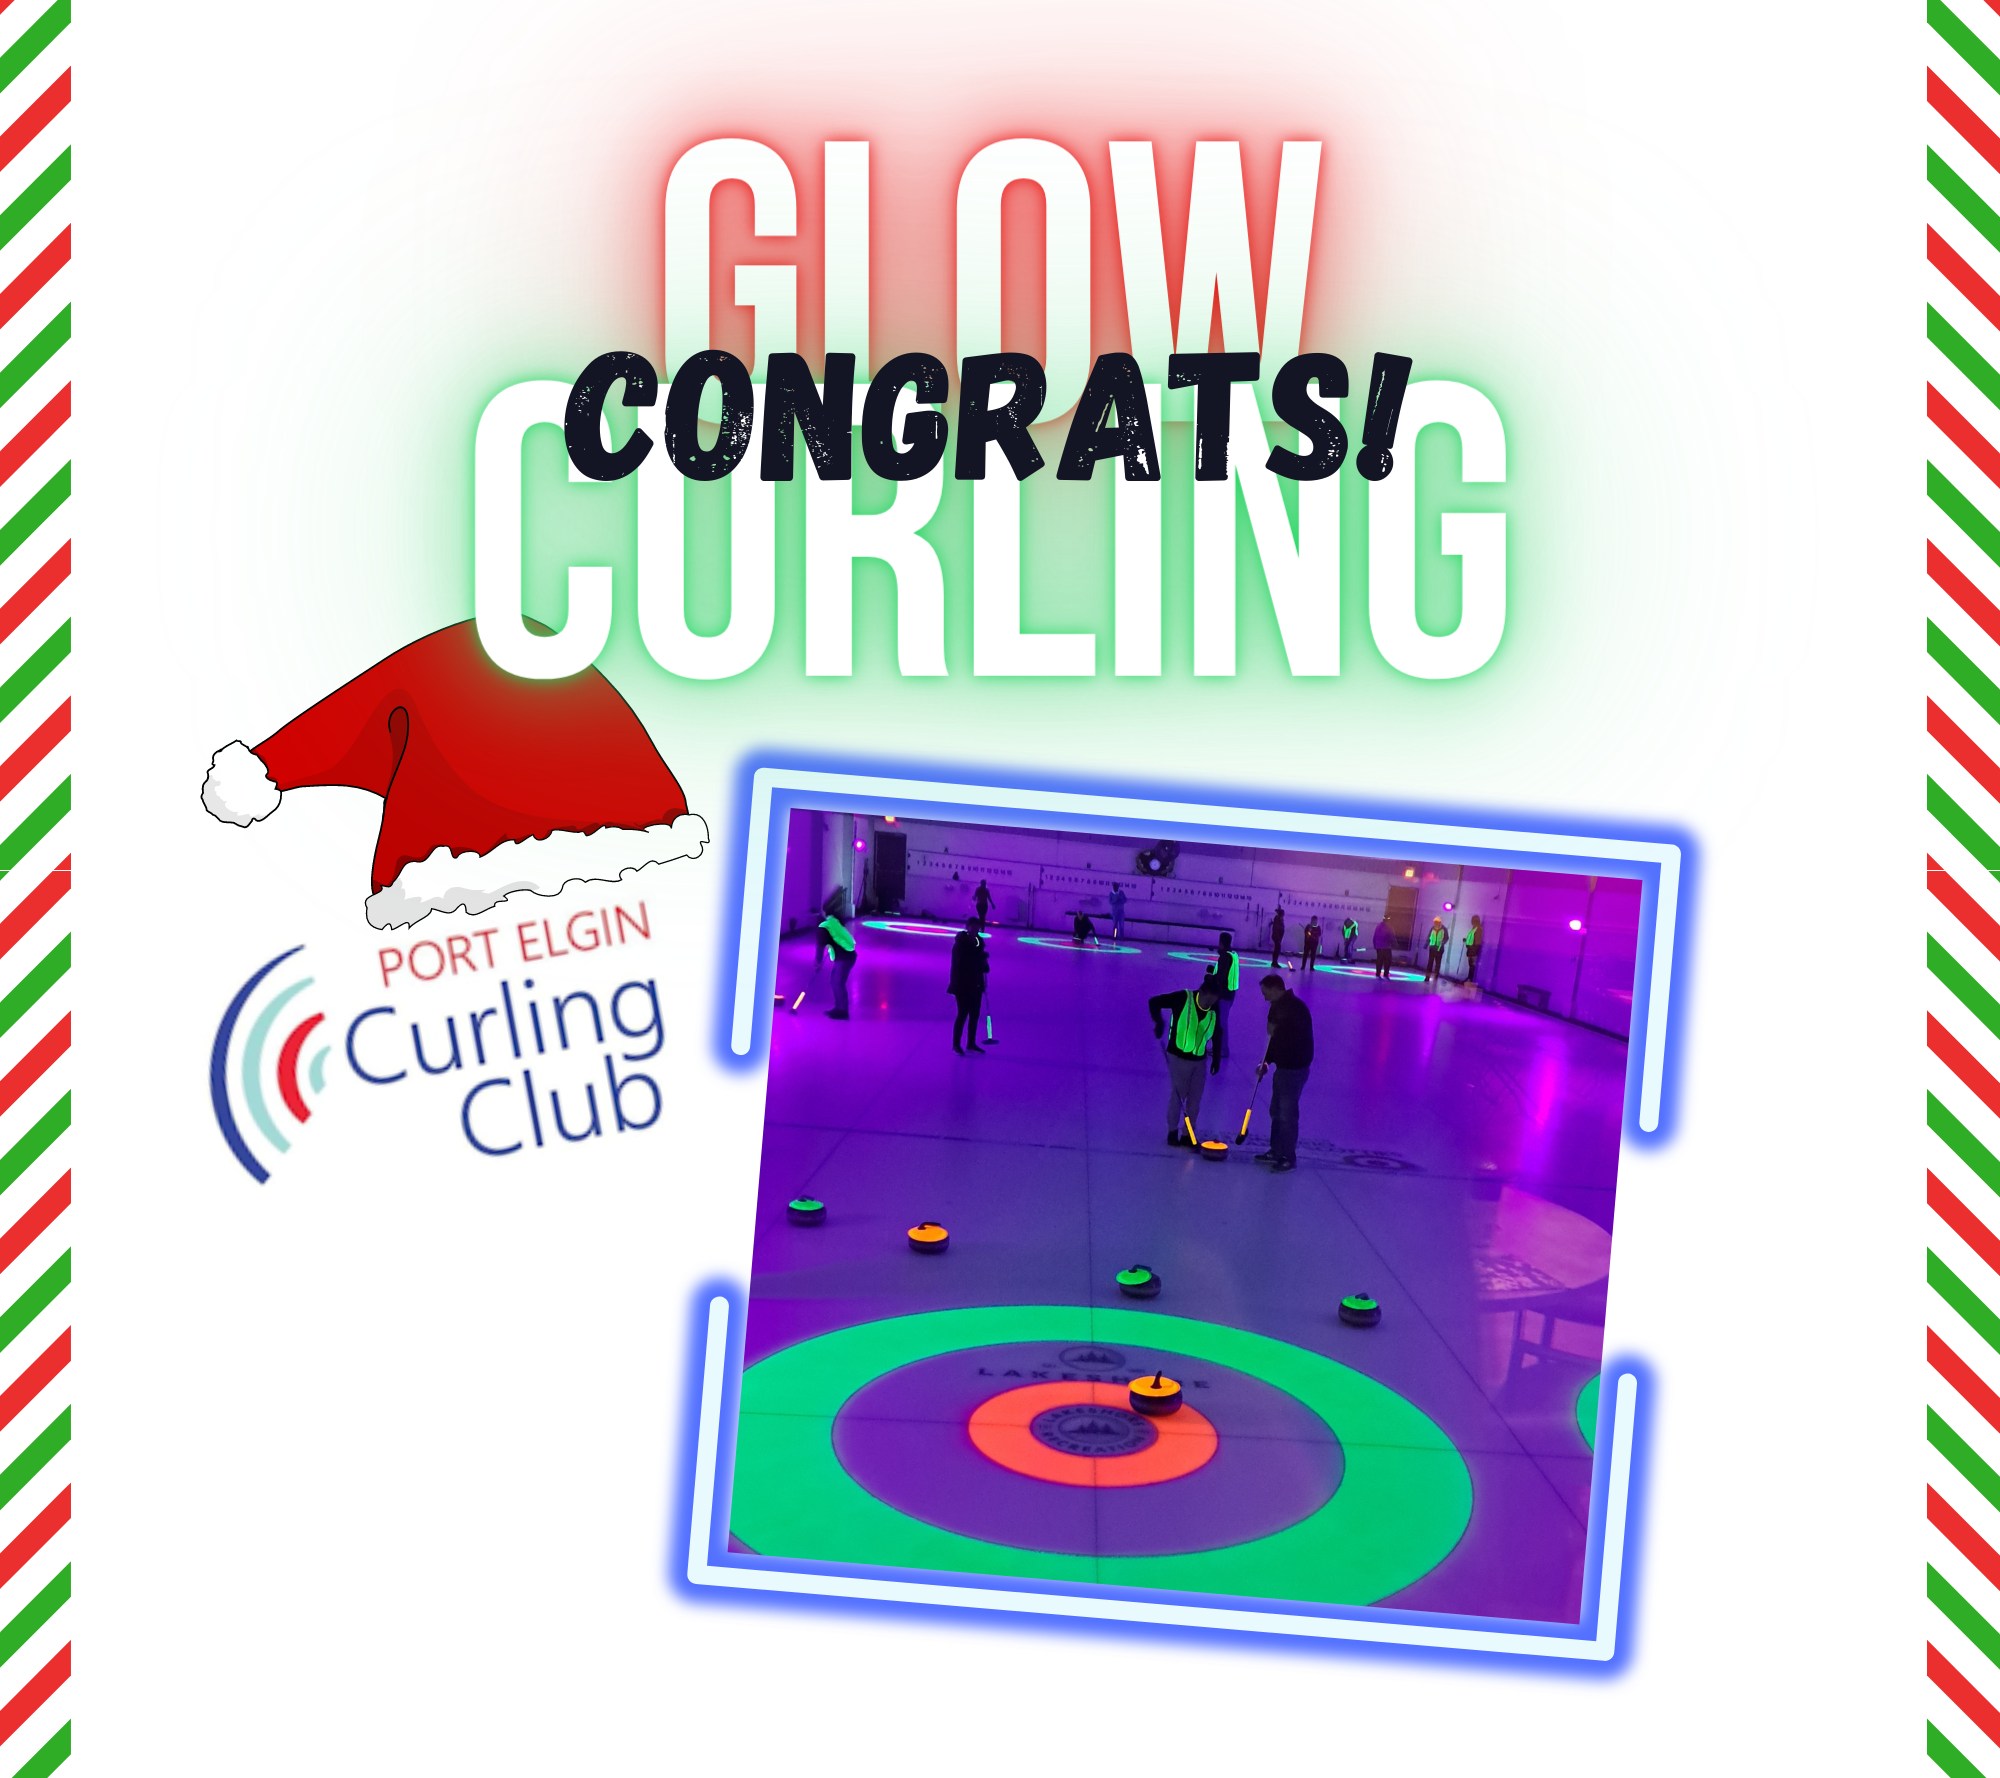 glow curling